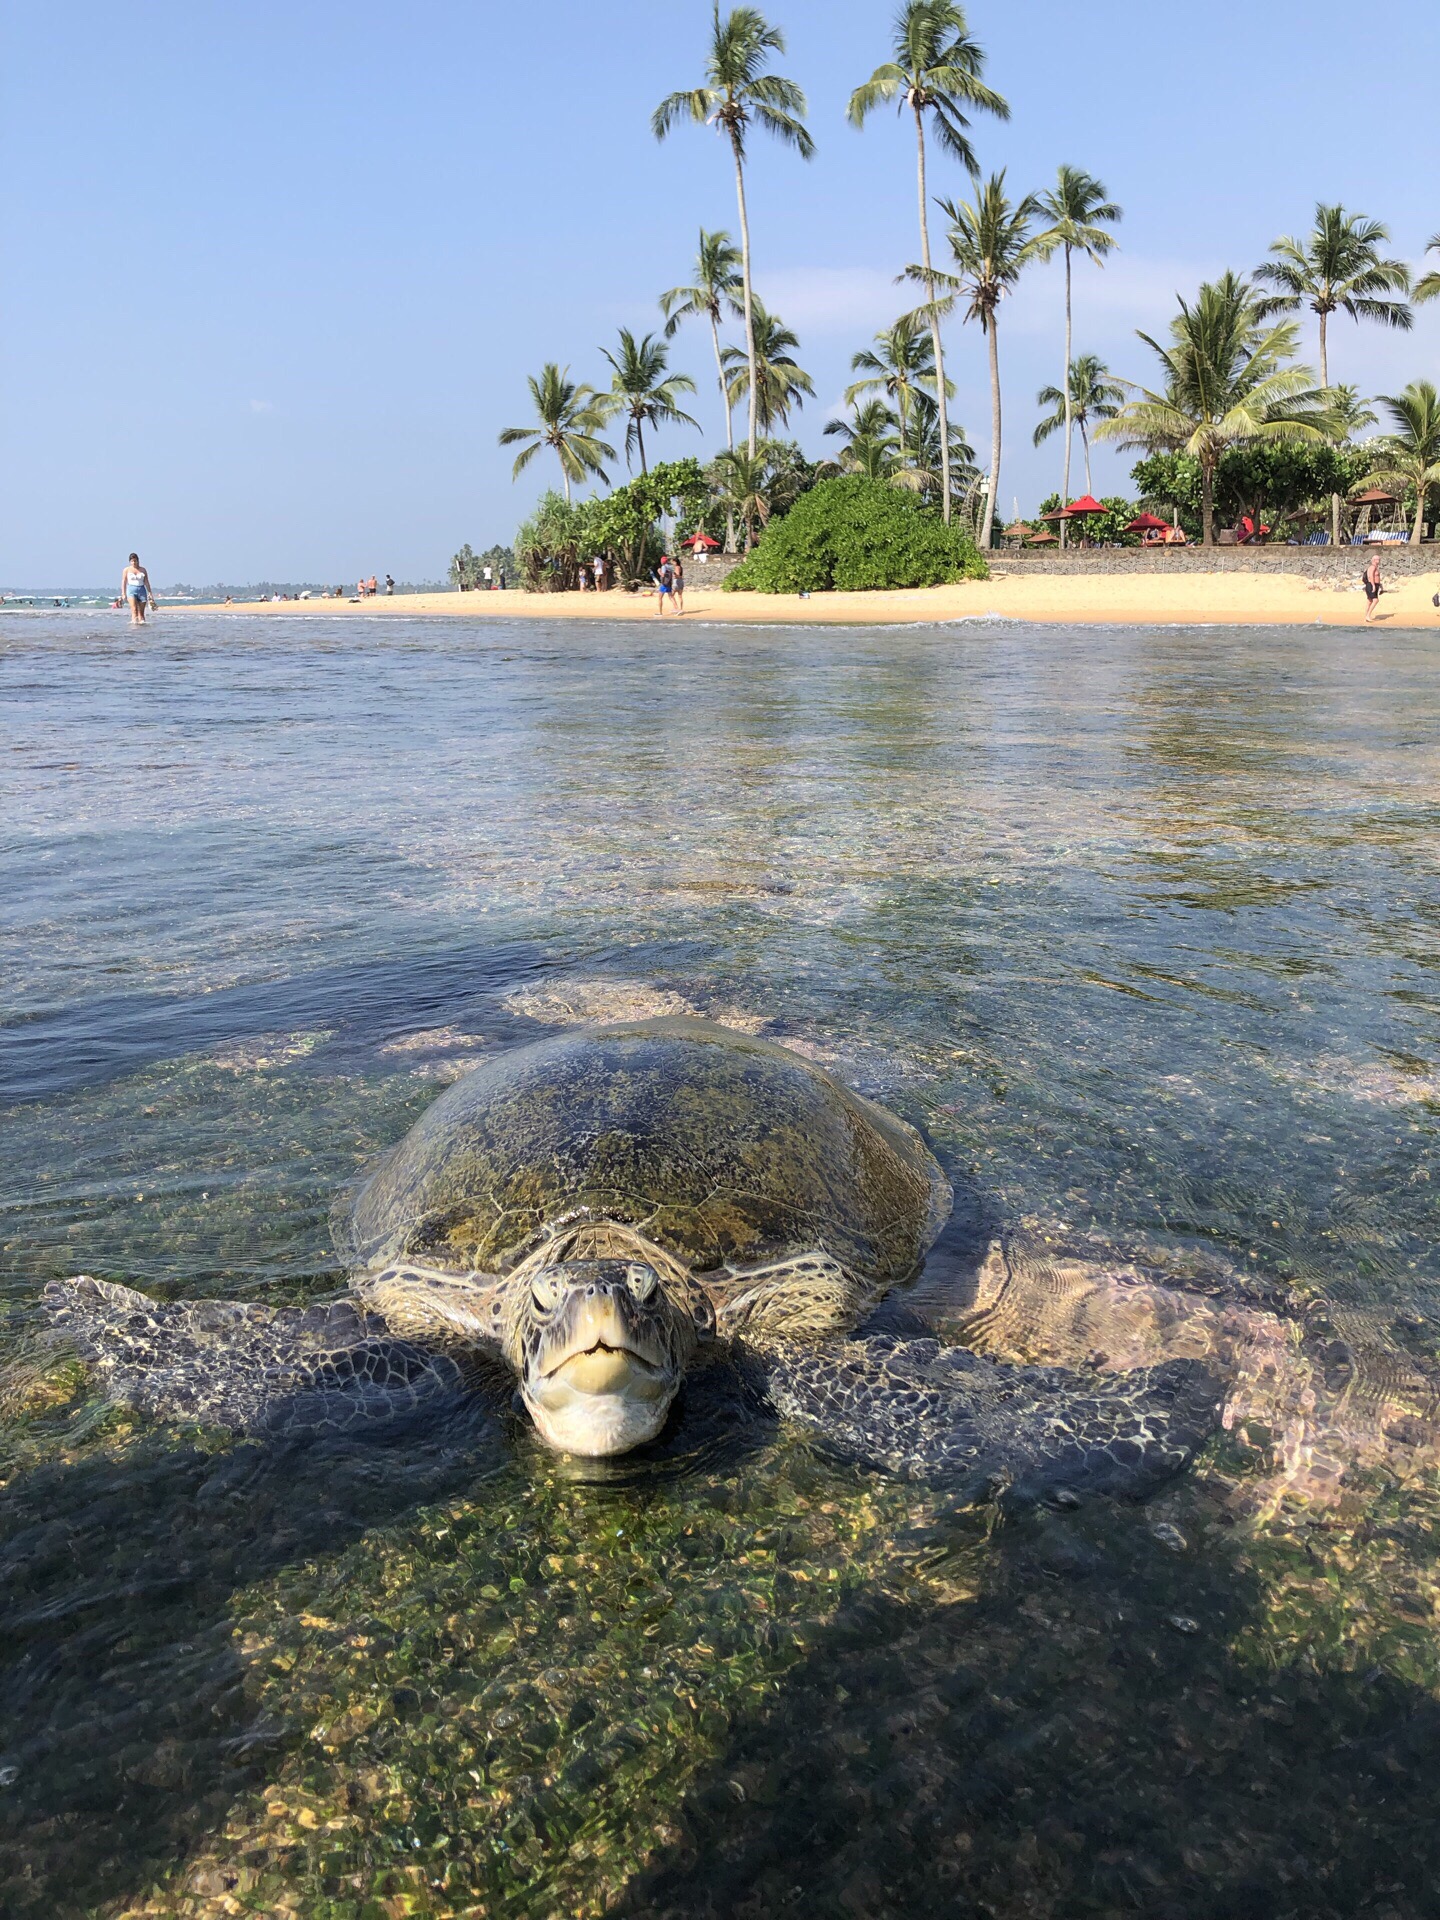 神奇的斯里兰卡，在海滩近距离接触大型绿海龟，浮潜还能看到各种热带鱼及小鲨鱼，强烈推荐，从广州或香港都